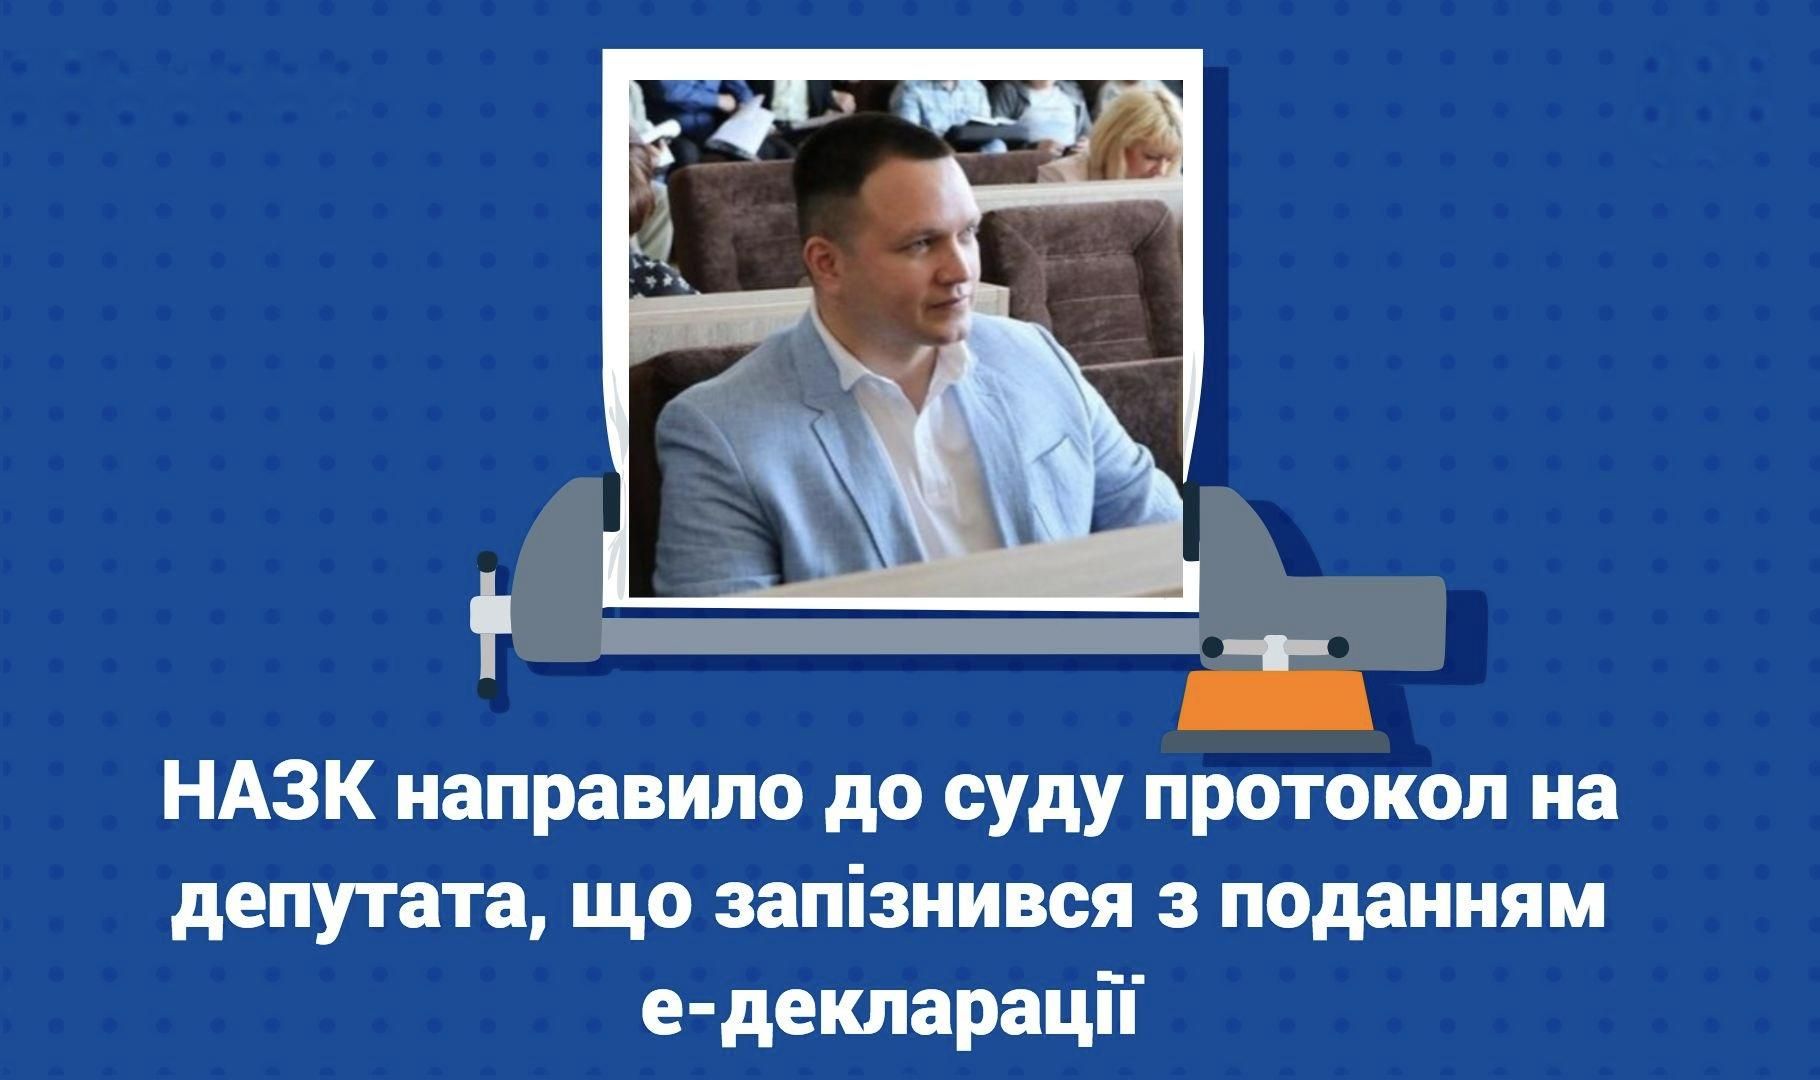 Депутат Черкасс Тищенко вовремя не подал декларацию: НАПК направило протокол о нарушении в суд